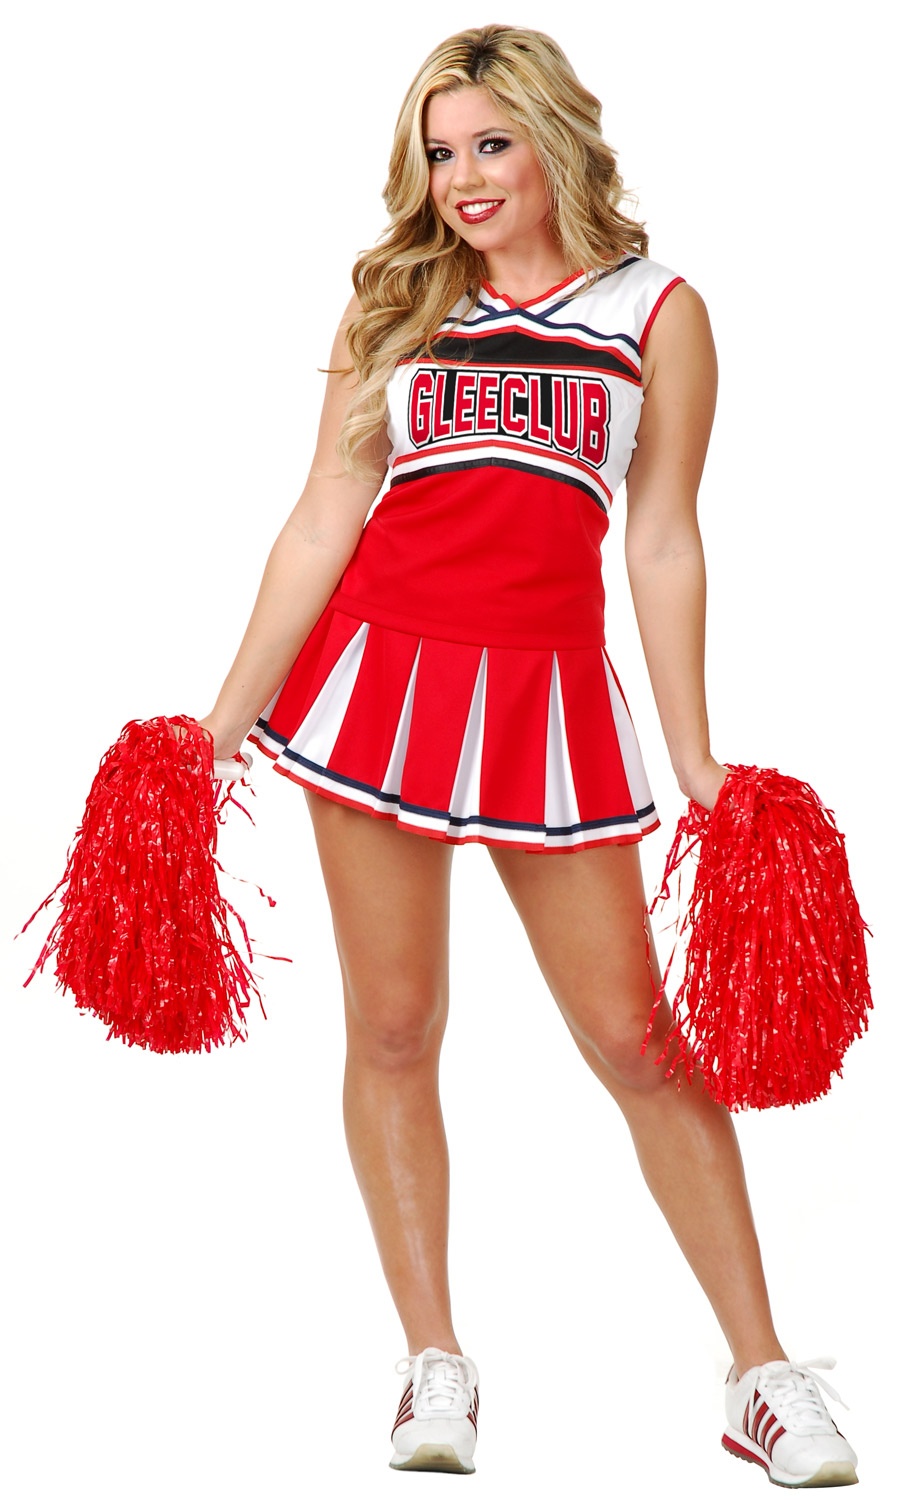 womens-gleeclub-cheerleader-costume-02475.jpg